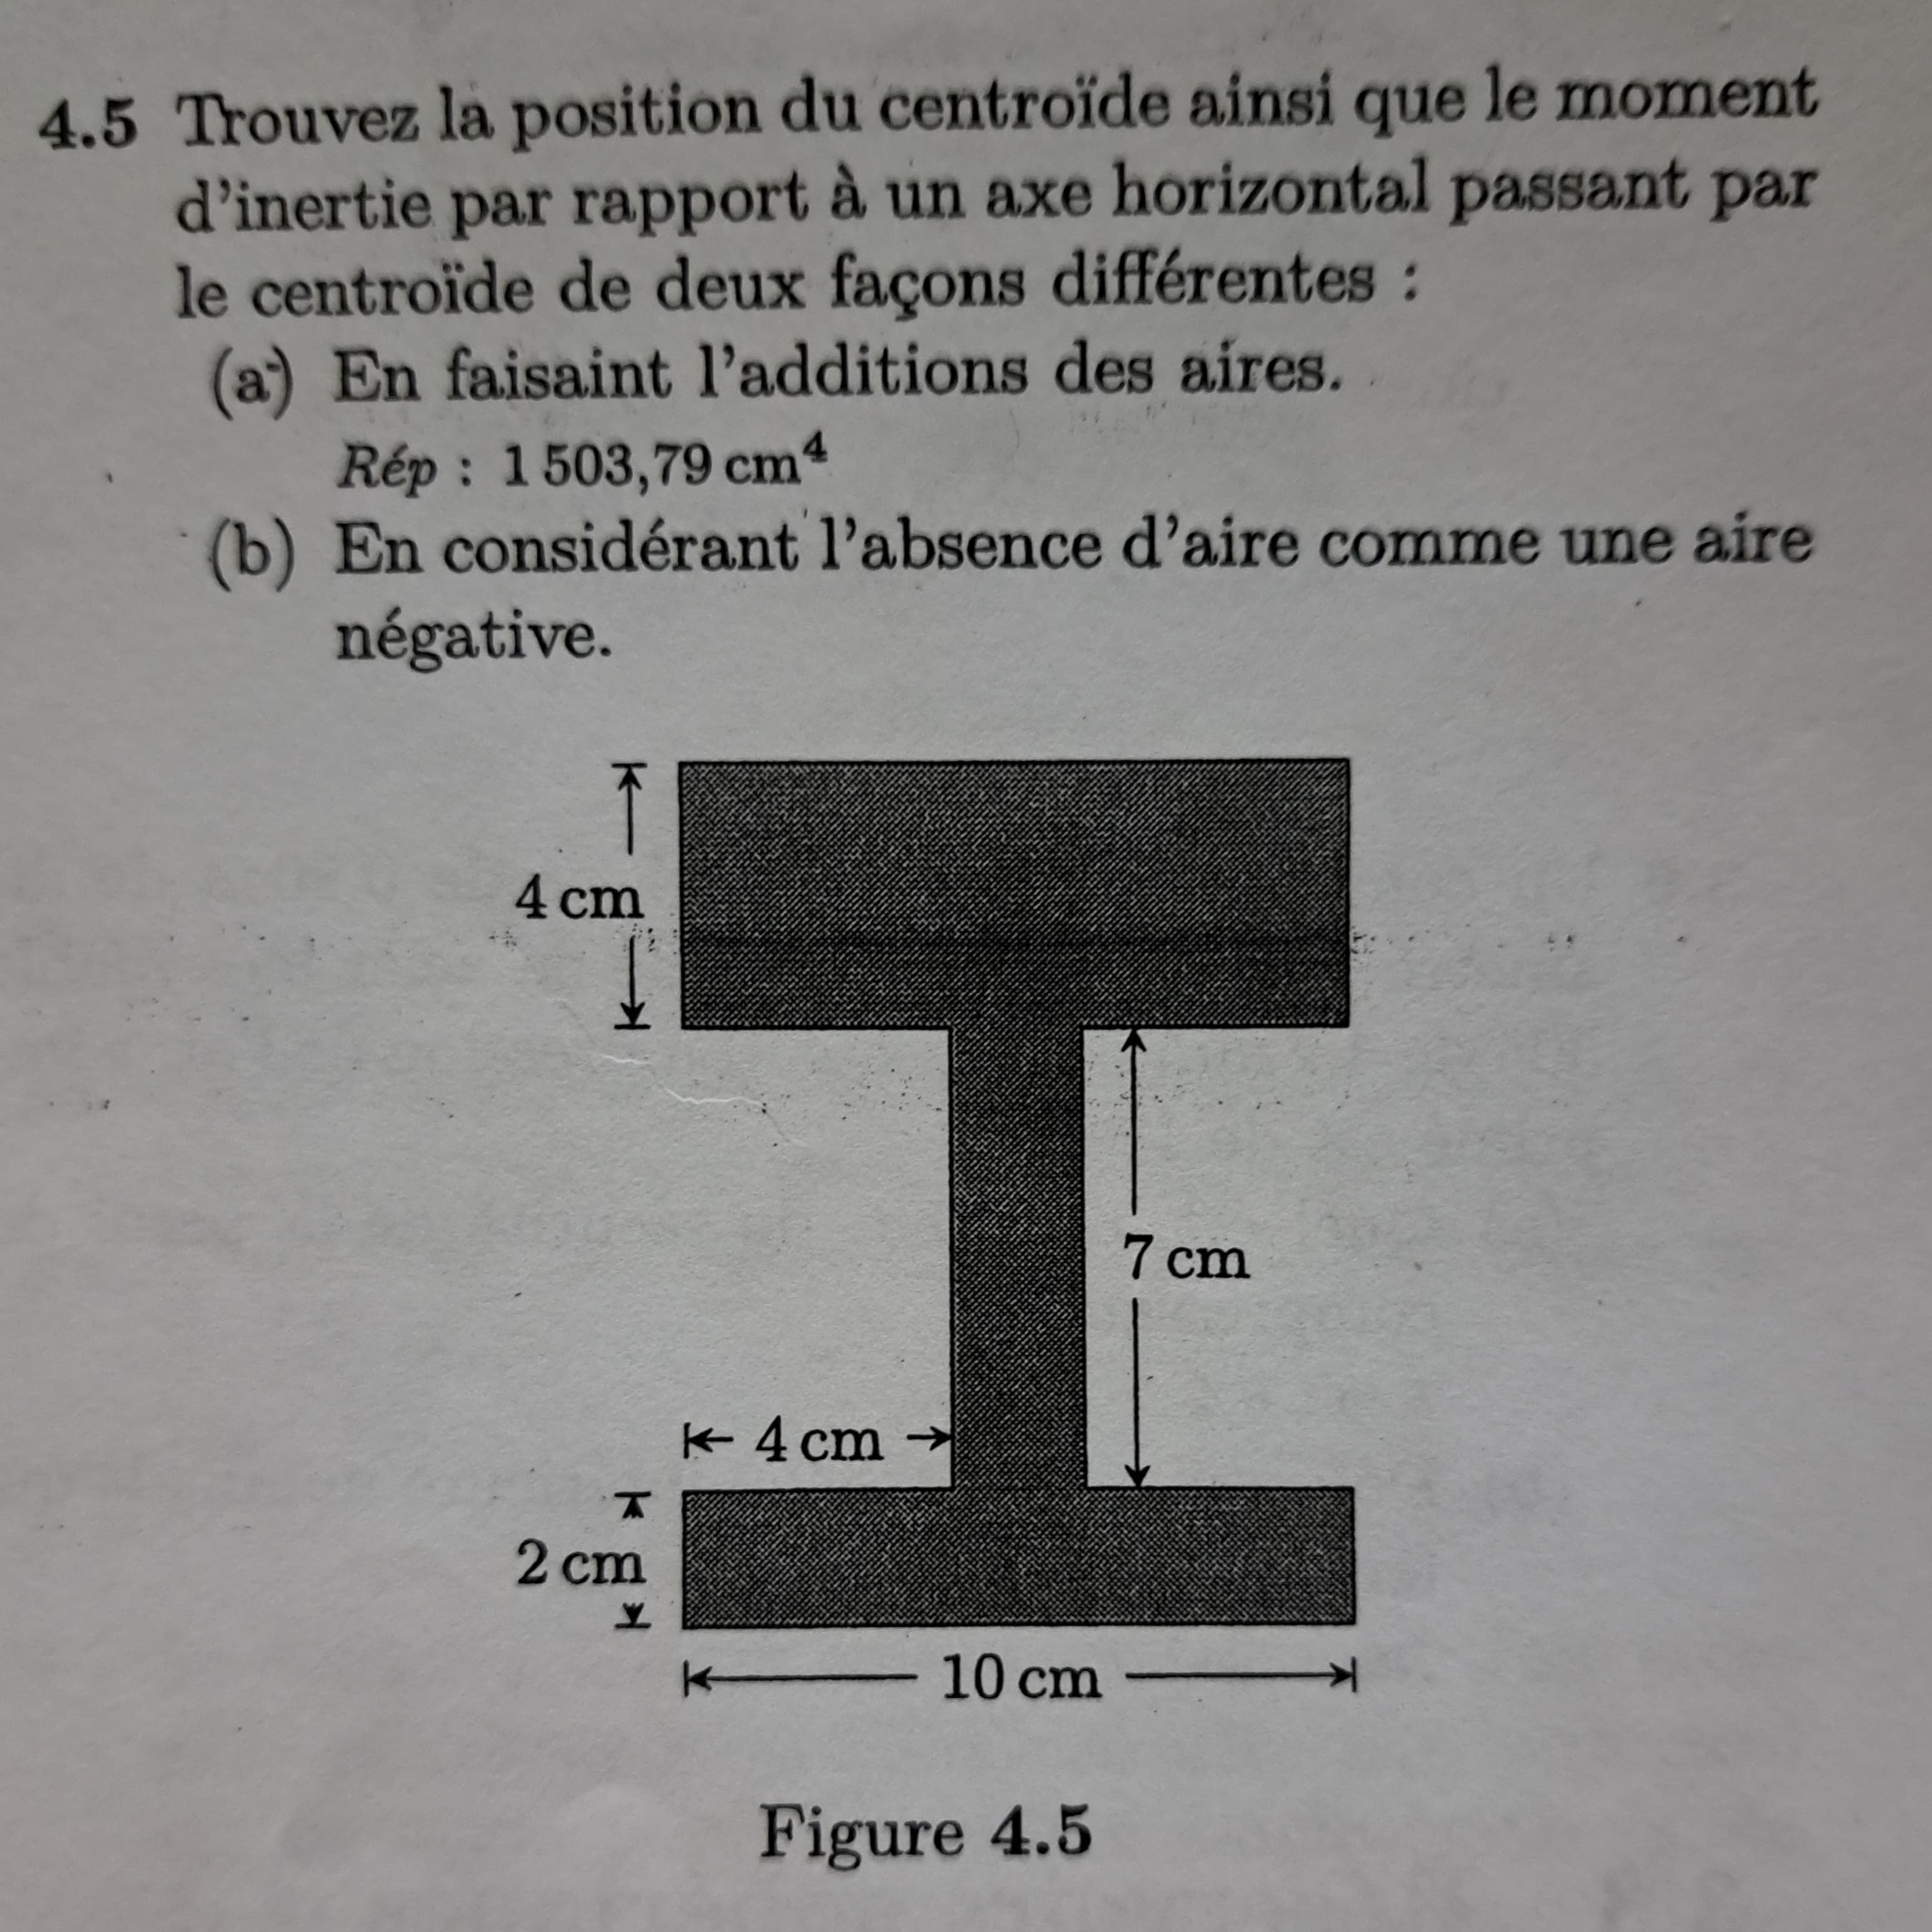 4.5 Trouvez la position du centroïde ainsi que le moment
d'inertie par rapport à un axe horizontal passant par
le centroïde de deux façons différentes :
(a) En faisaint l'additions des aires.
Rép: 1503,79 cm4
(b) En considérant l'absence d'aire comme une aire
négative.
K
4 cm
T
2 cm
Y
K 4 cm
K 10 cm
Figure 4.5
7 cm